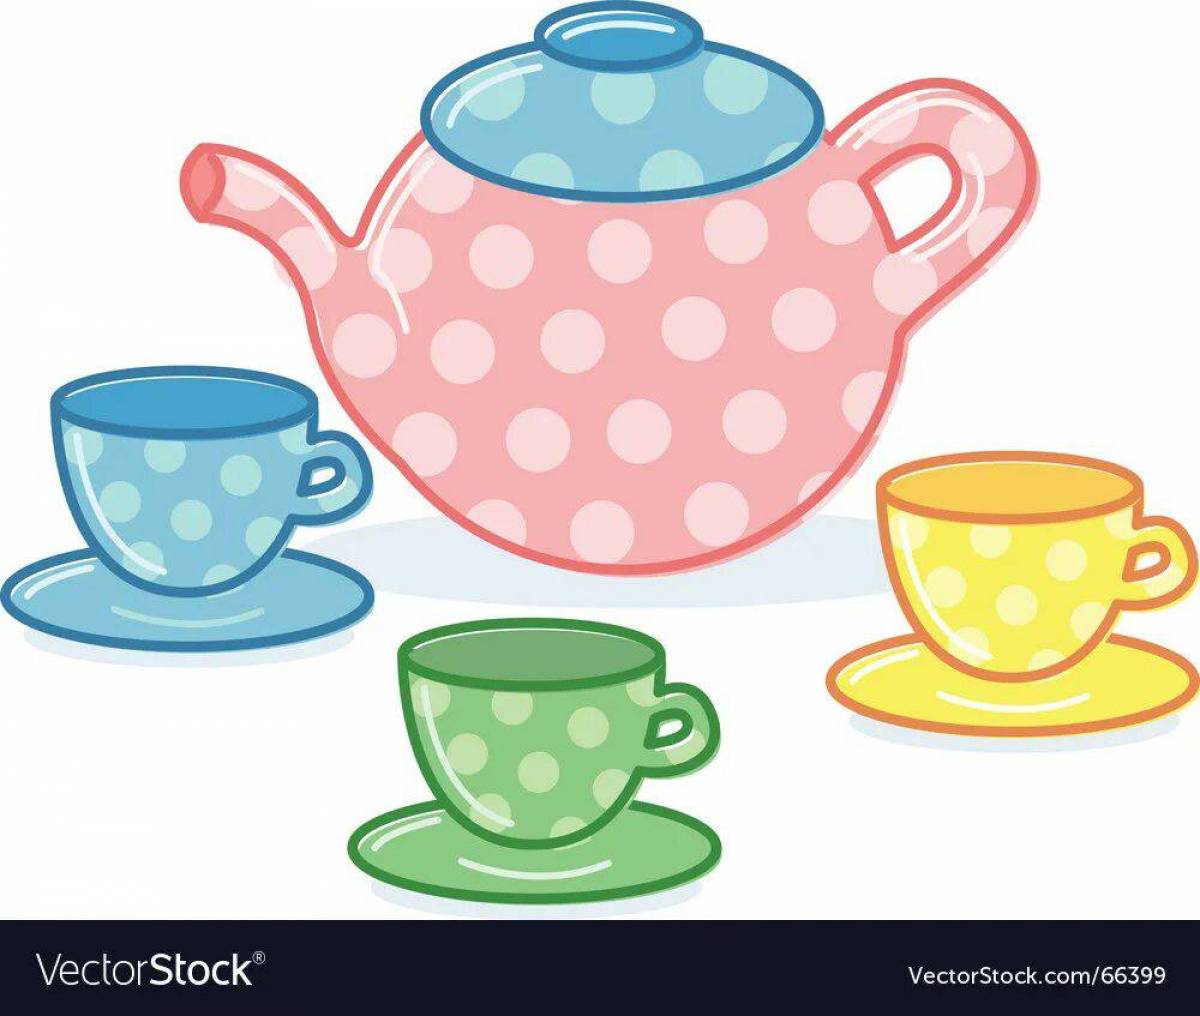 Чайник и чашка для детей #31